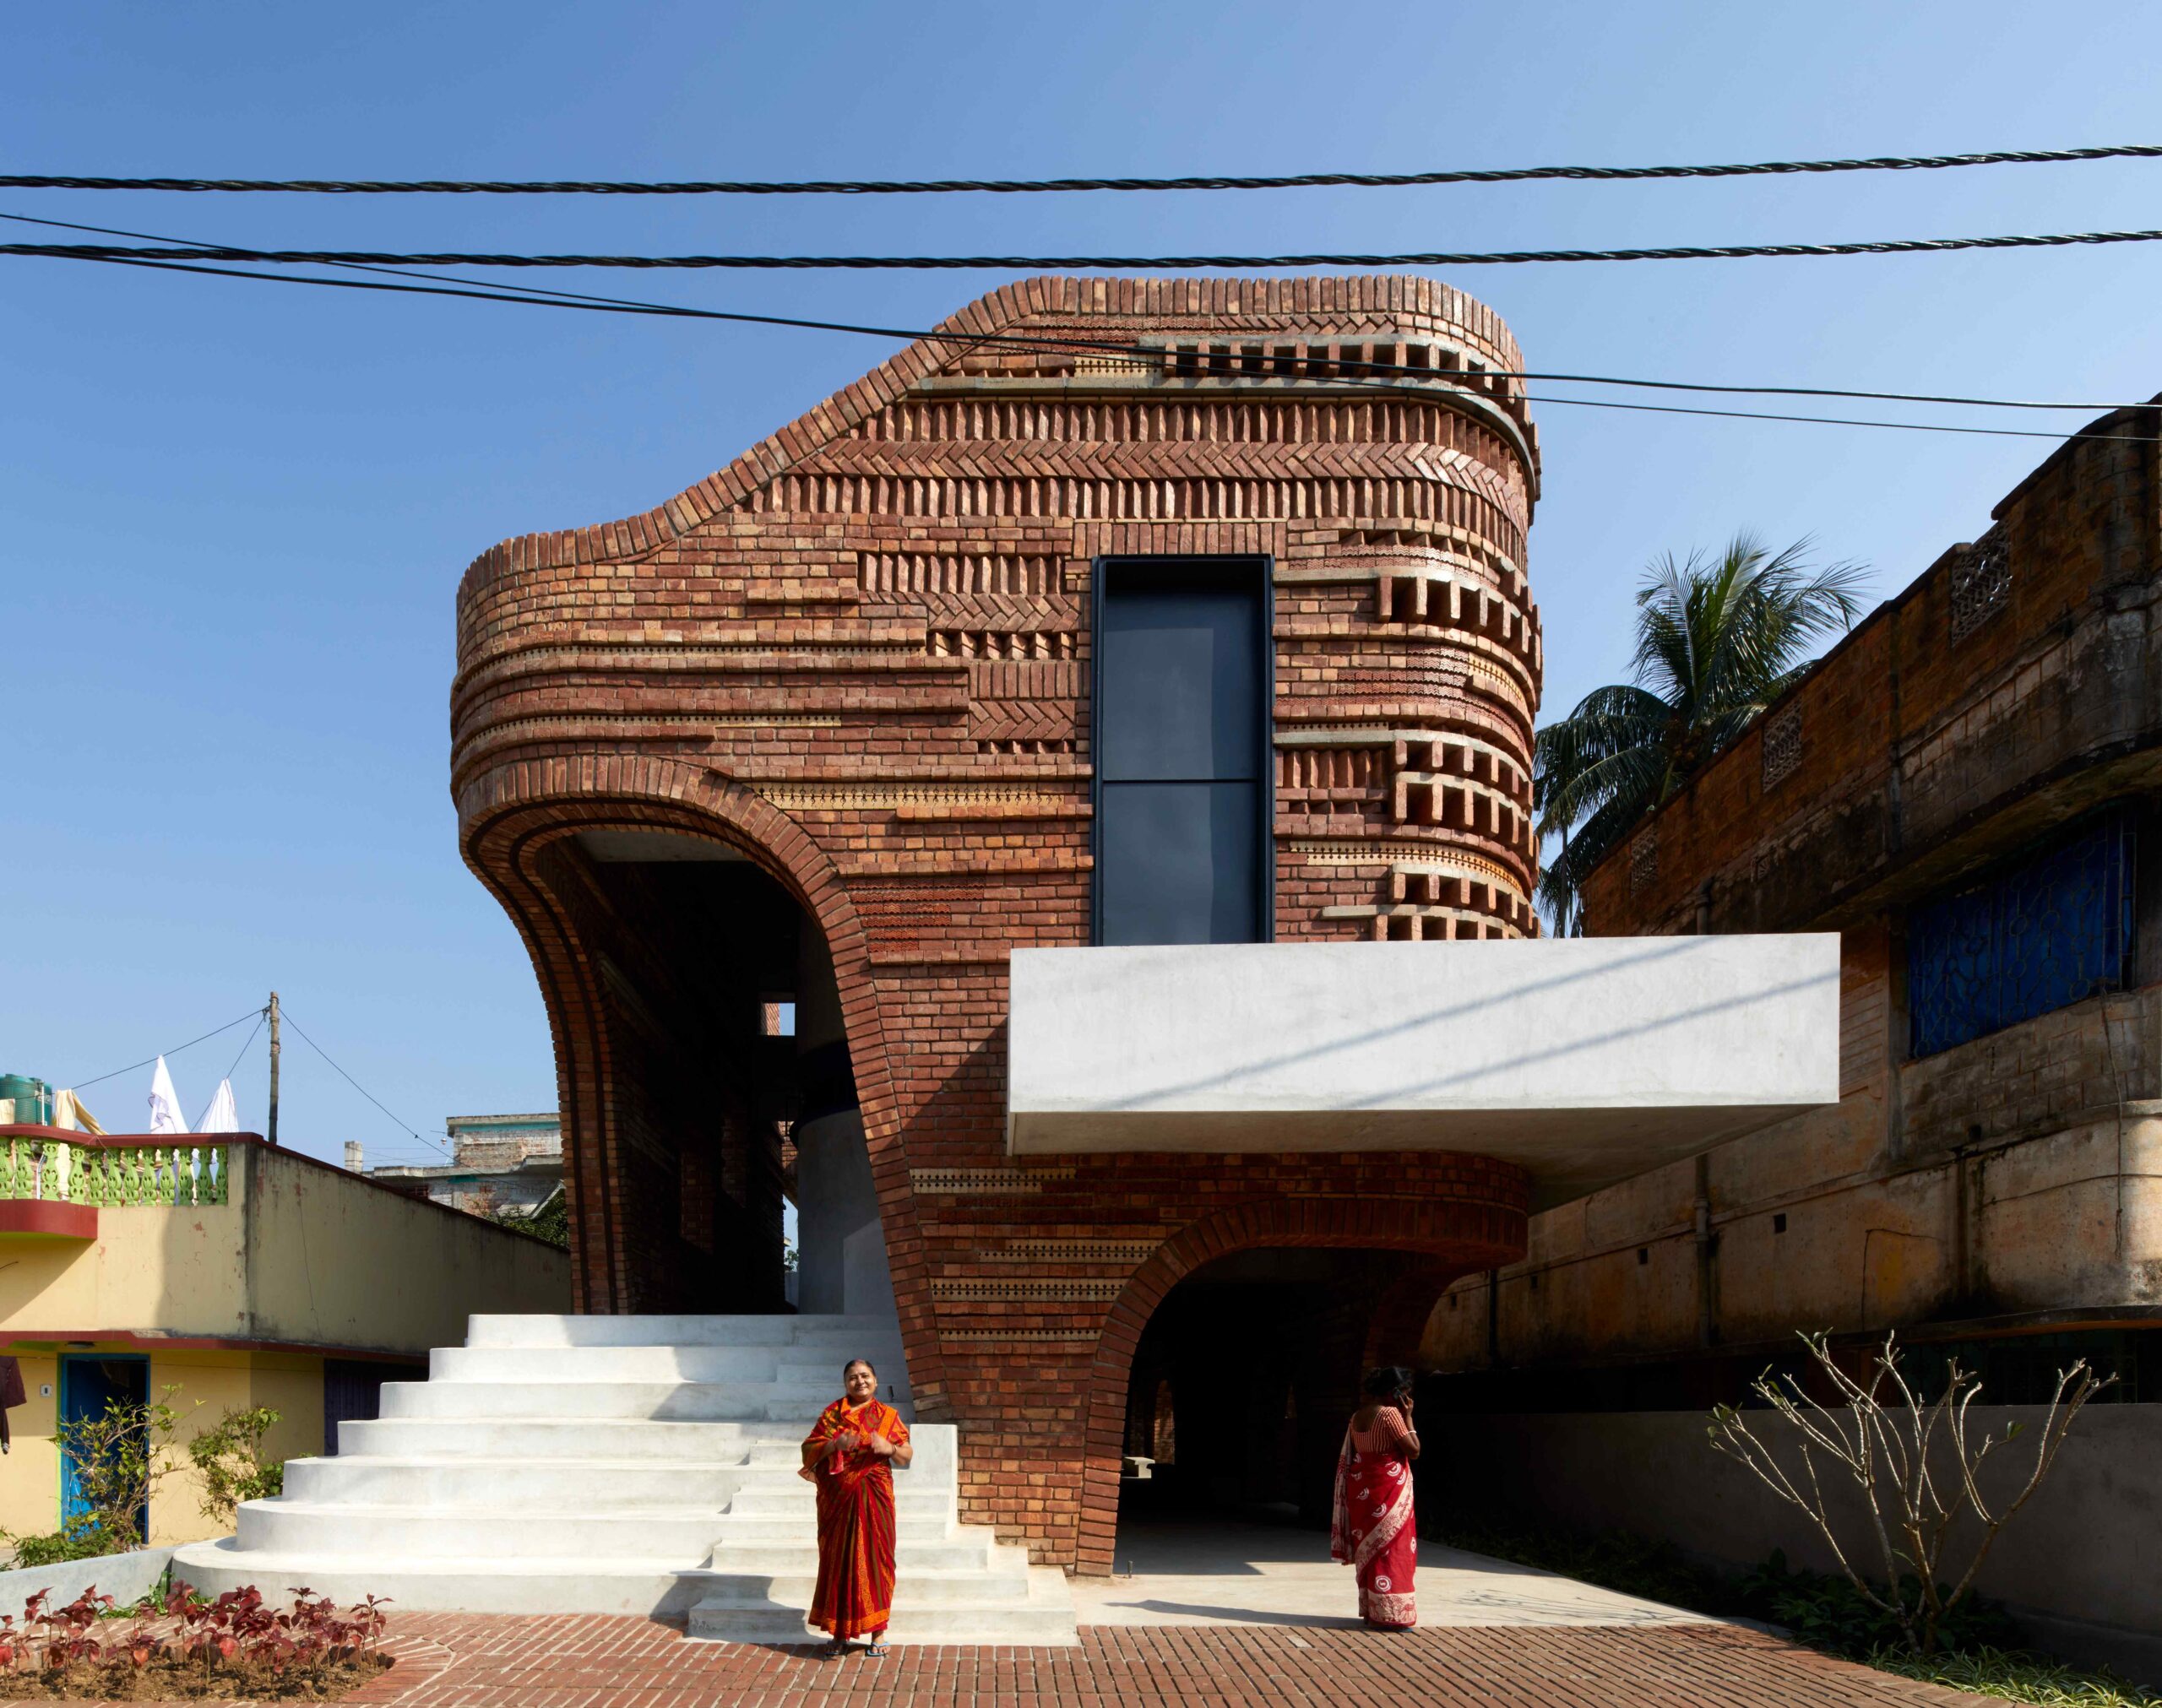 ArchitectureLive!-Architecture in India 73